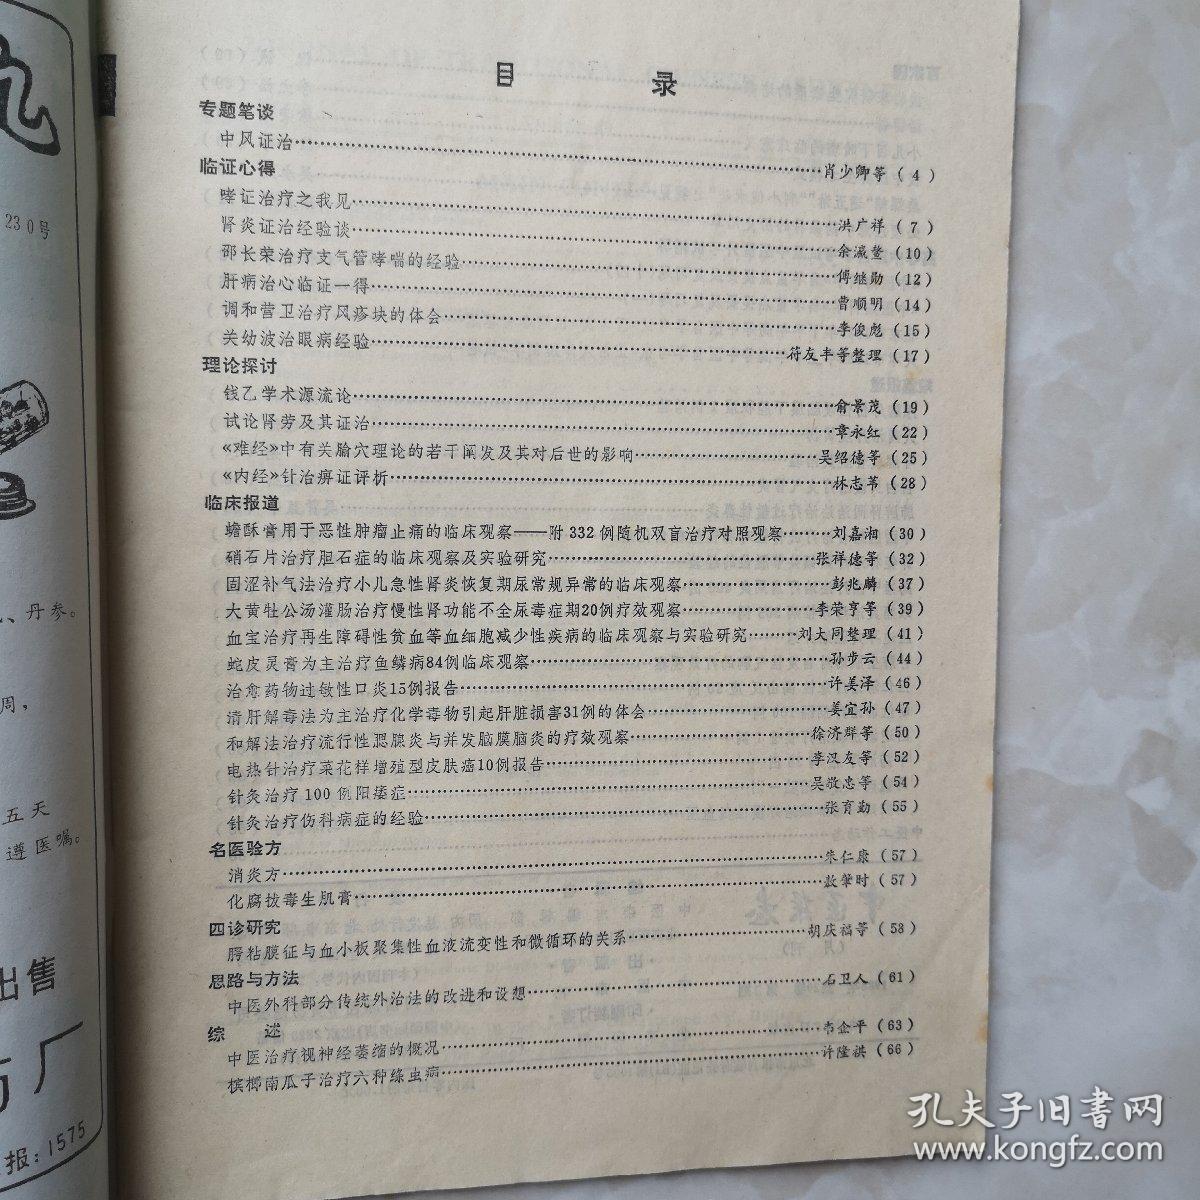 中医杂志1988年第3期